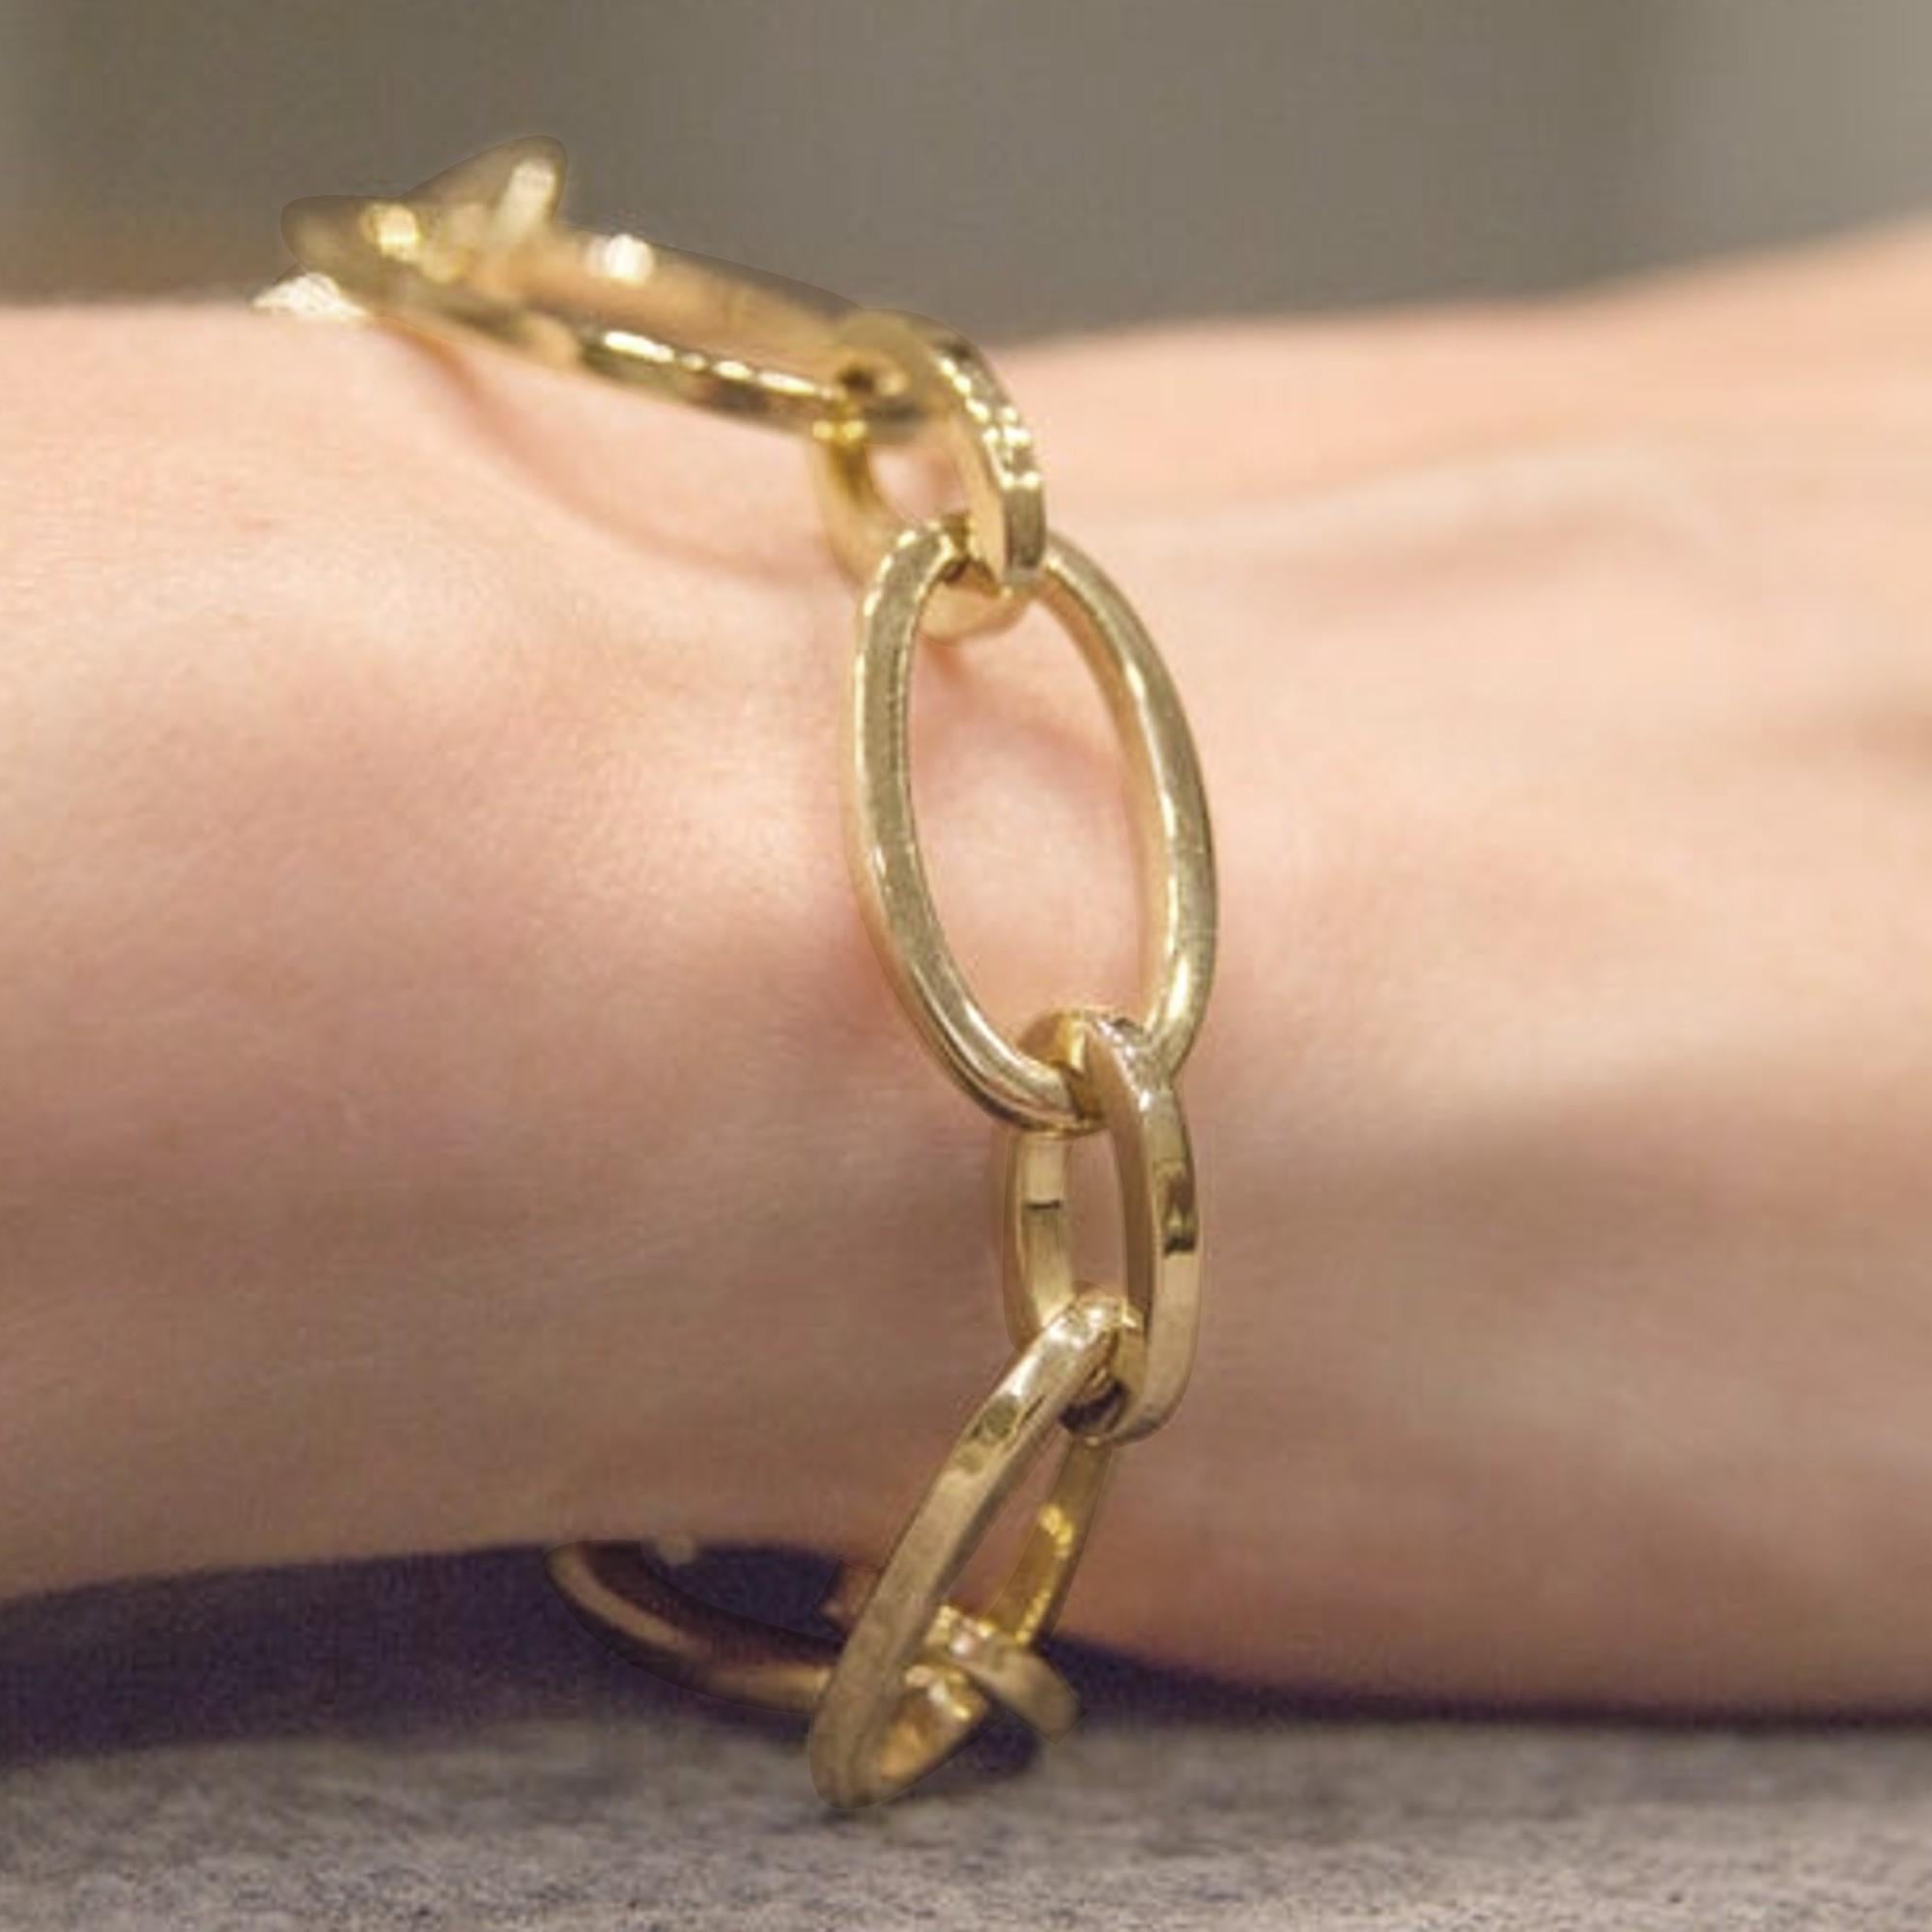 Collection Jona, fait à la main en Italie, or jaune 18 carats, bracelet à chaîne de 7,9 pouces-20 cm de long.

Les bijoux Alex Jona se distinguent, non seulement par leur design particulier et par l'excellente qualité des pierres précieuses, mais